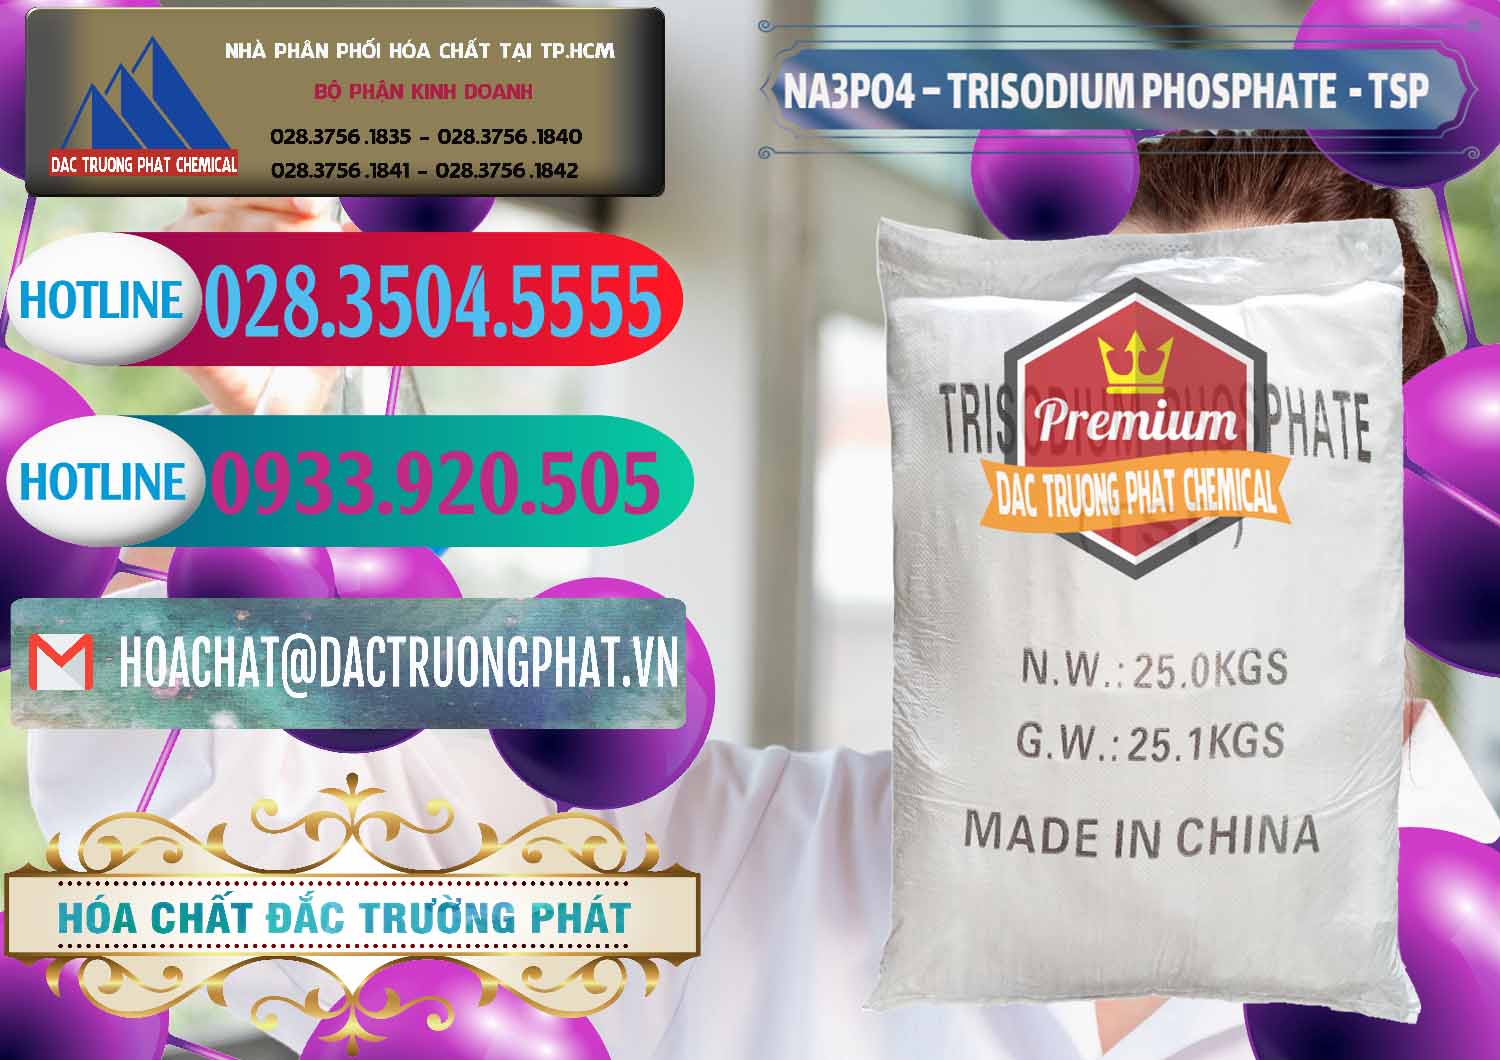 Chuyên phân phối & bán Na3PO4 – Trisodium Phosphate Trung Quốc China TSP - 0103 - Đơn vị cung cấp và phân phối hóa chất tại TP.HCM - truongphat.vn